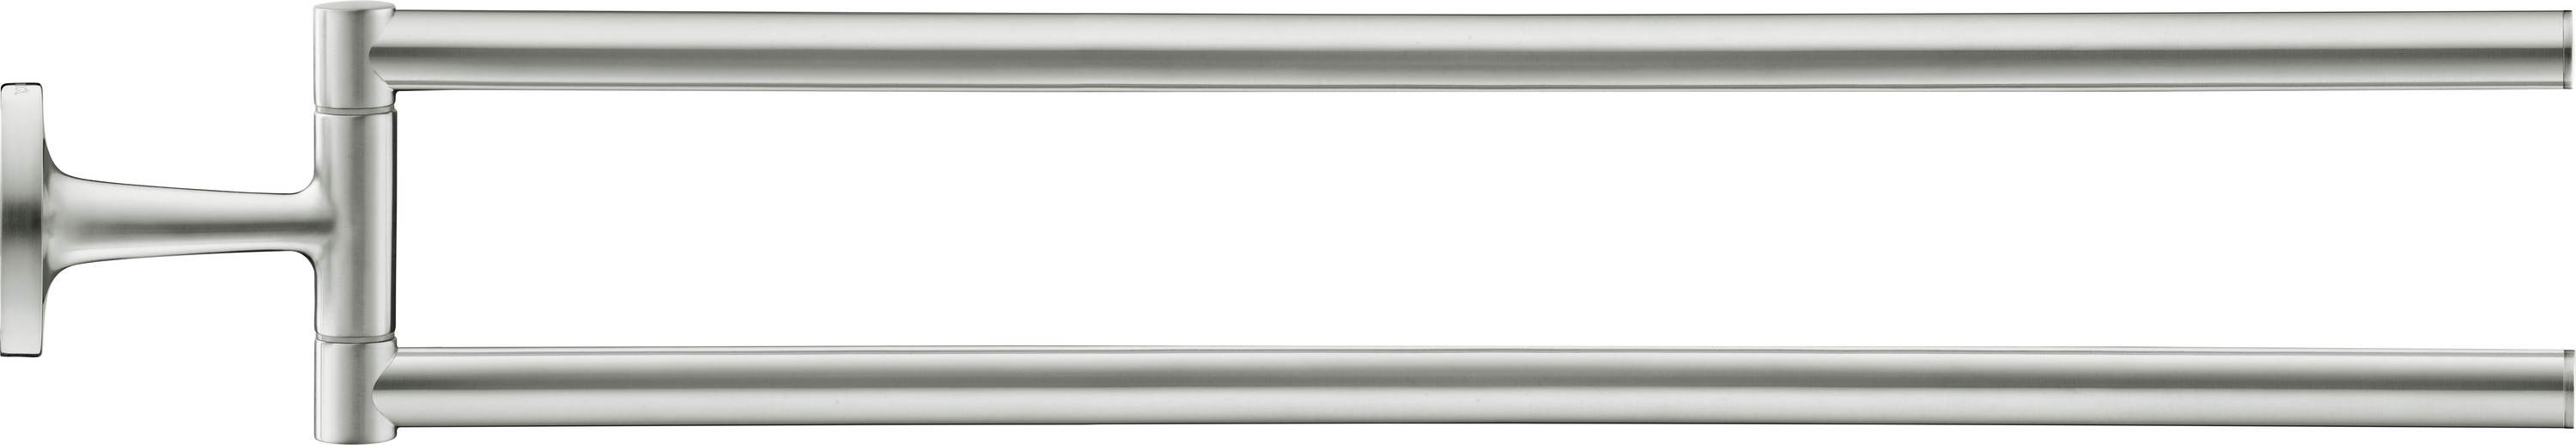 Starck T Handtuchhalter, 88x486x57 mm, Schwenkbars